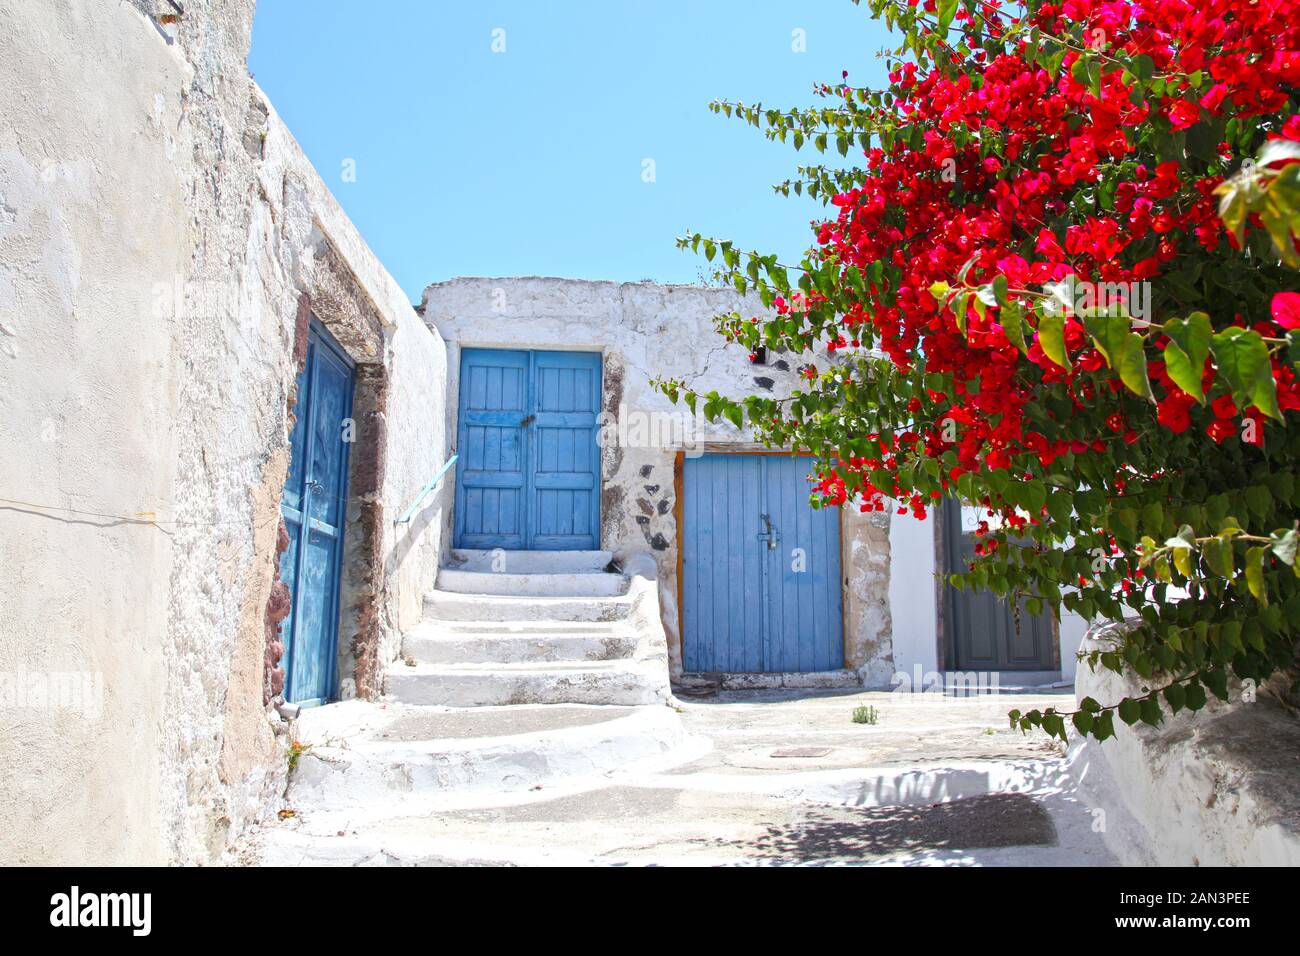 Murs peints en blanc avec portes bleues et fleurs de bougainvillea rouges au premier plan, dans le village traditionnel de Megalochori, Santorin, Grèce. Banque D'Images